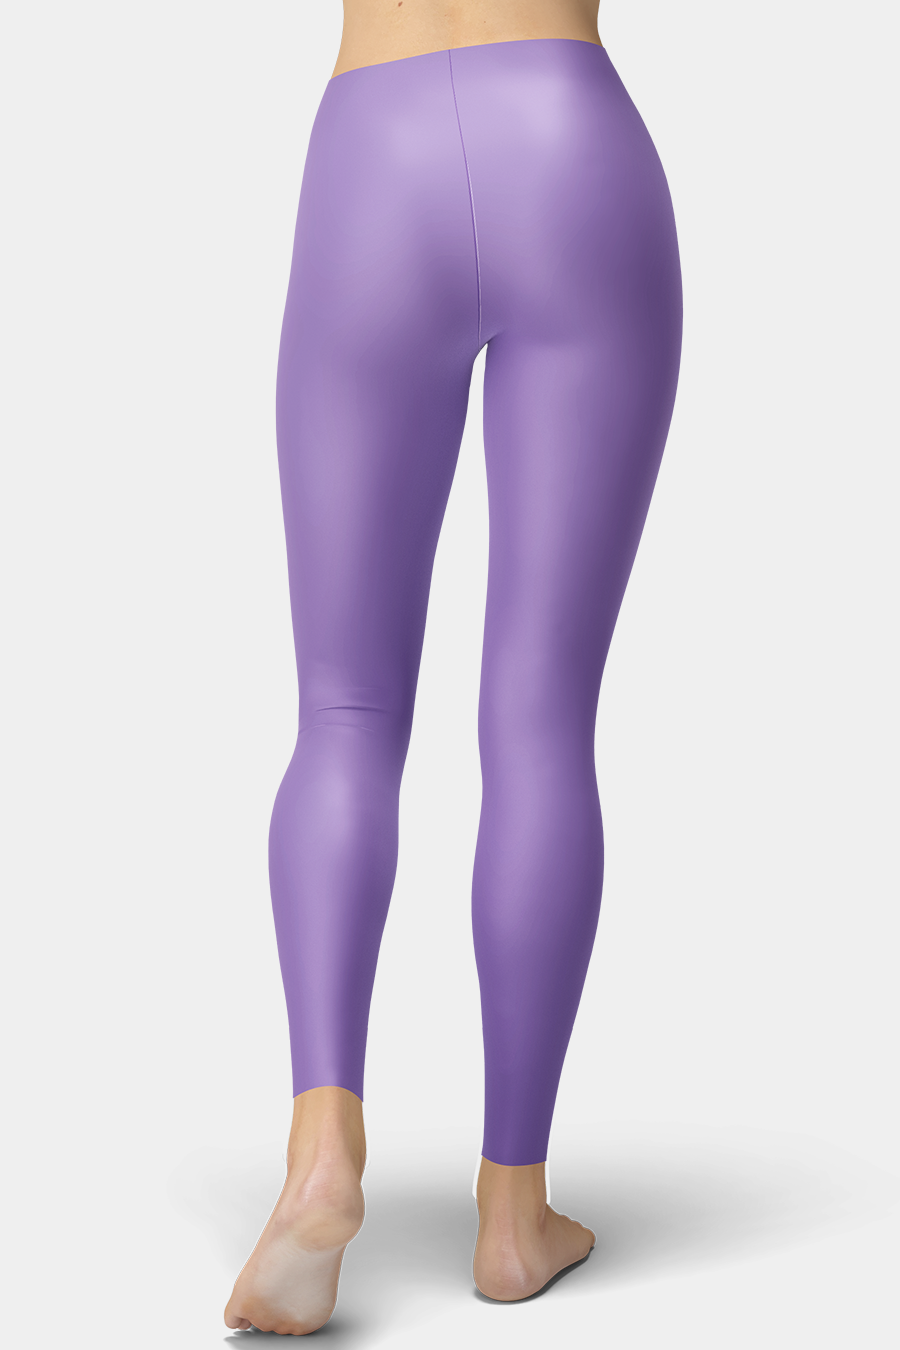 Lavender Purple Leggings - SeeMyLeggings